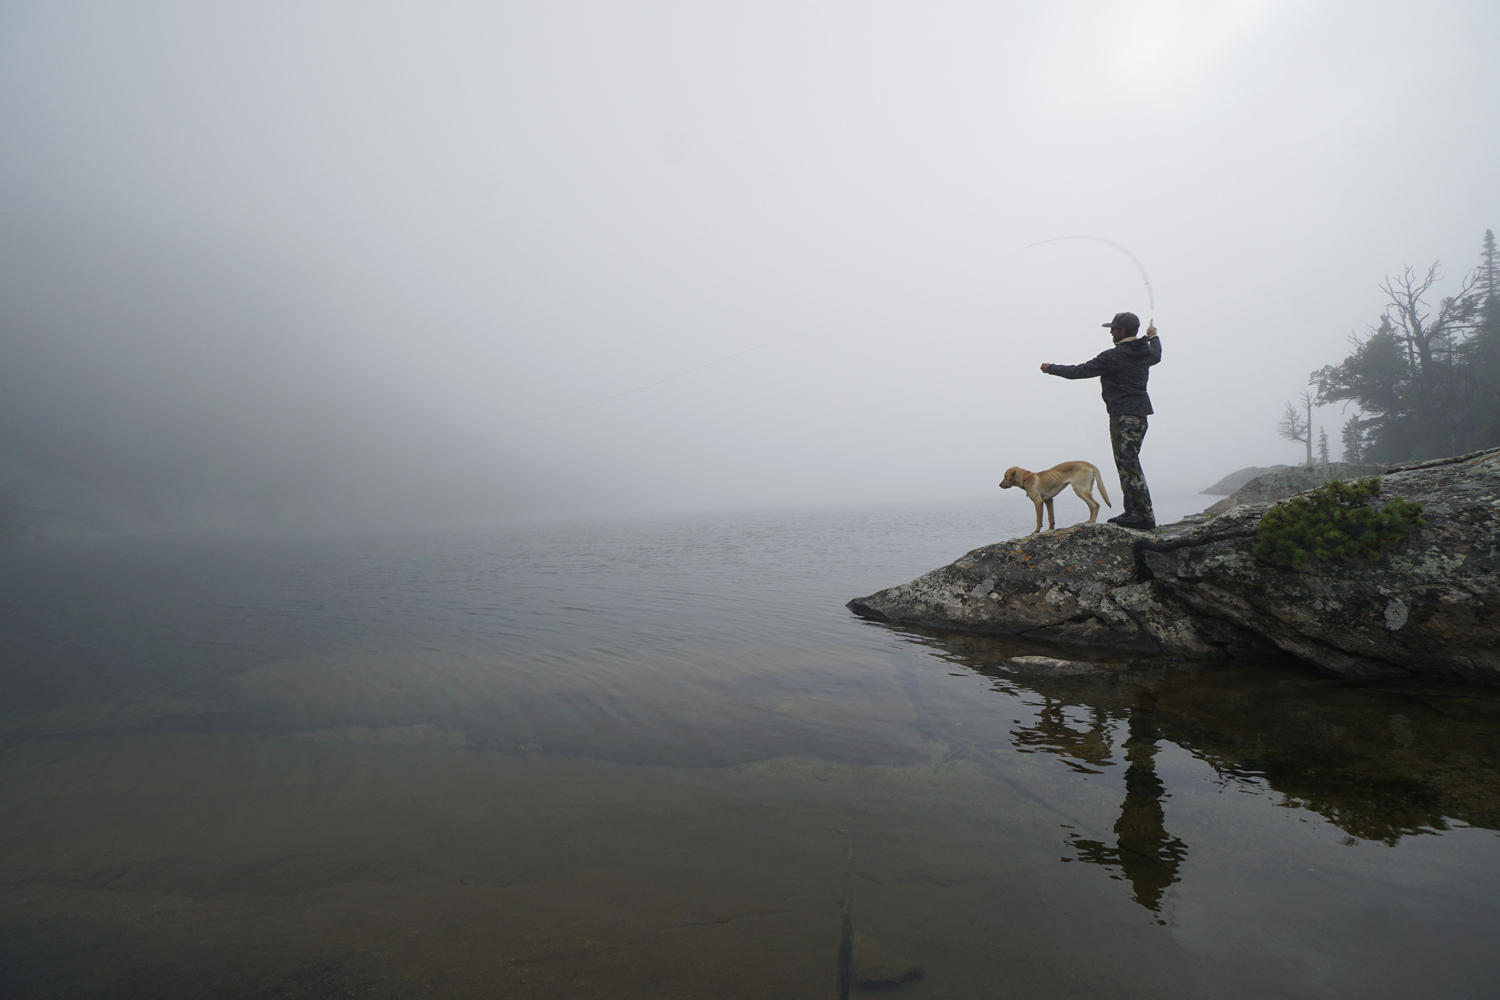 misty fishing scene with dog